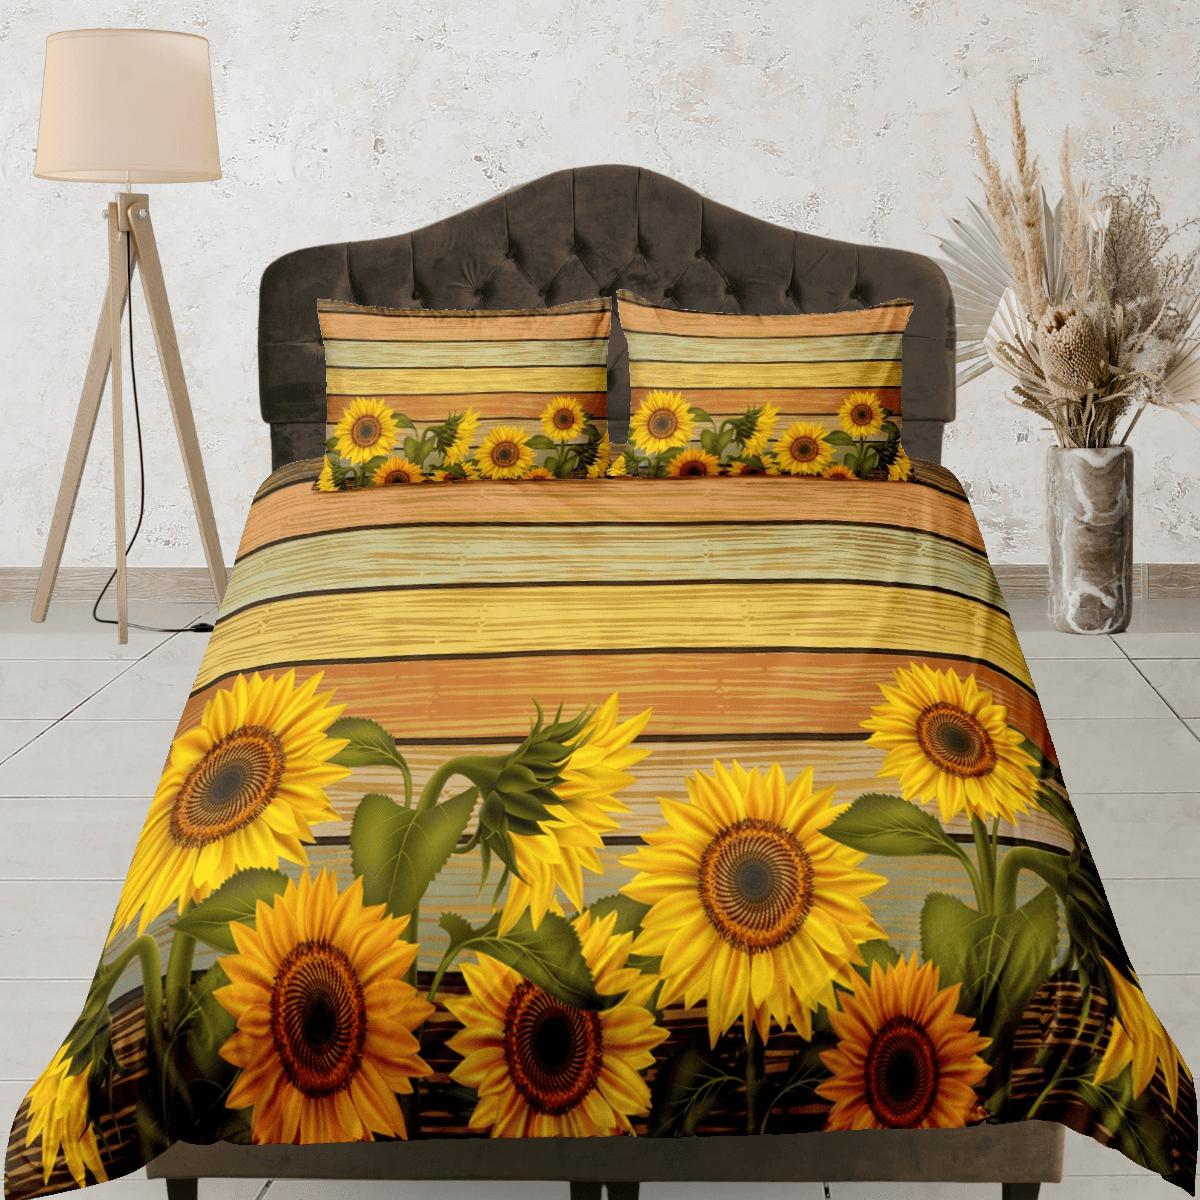 daintyduvet Sunflower floral bedding, duvet cover queen, king, boho duvet, designer bedding, aesthetic bedding, maximalist decor, full size bedding